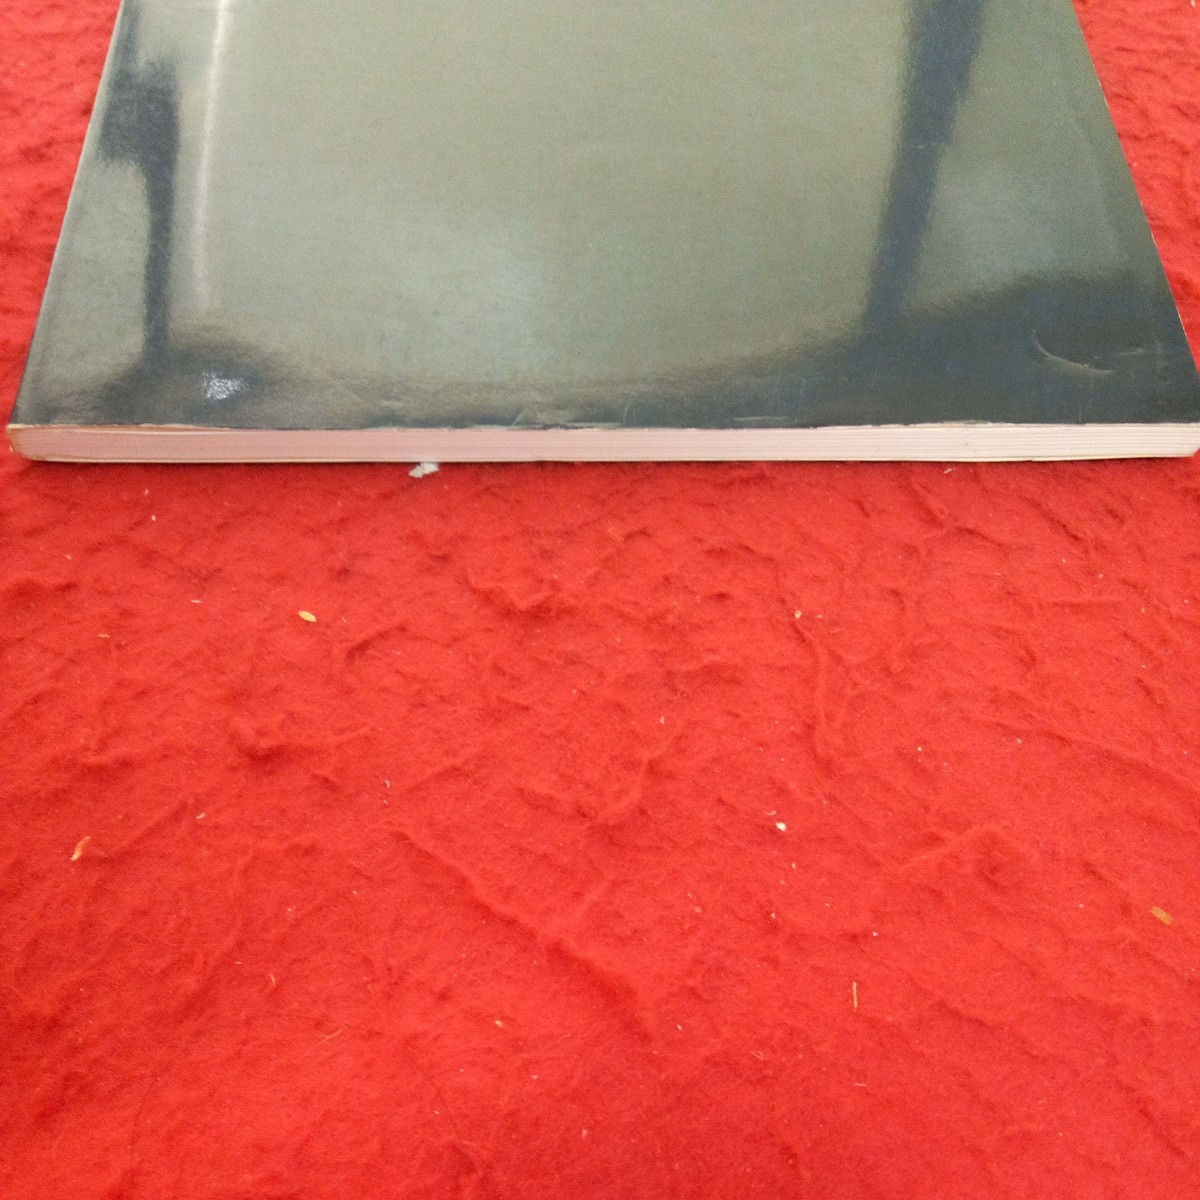 h-304 国松登展 群青の時 書き残された心象 1995年発行 札幌芸術の森 初期から〈眼のない魚〉まで 作品リスト など※1_画像7